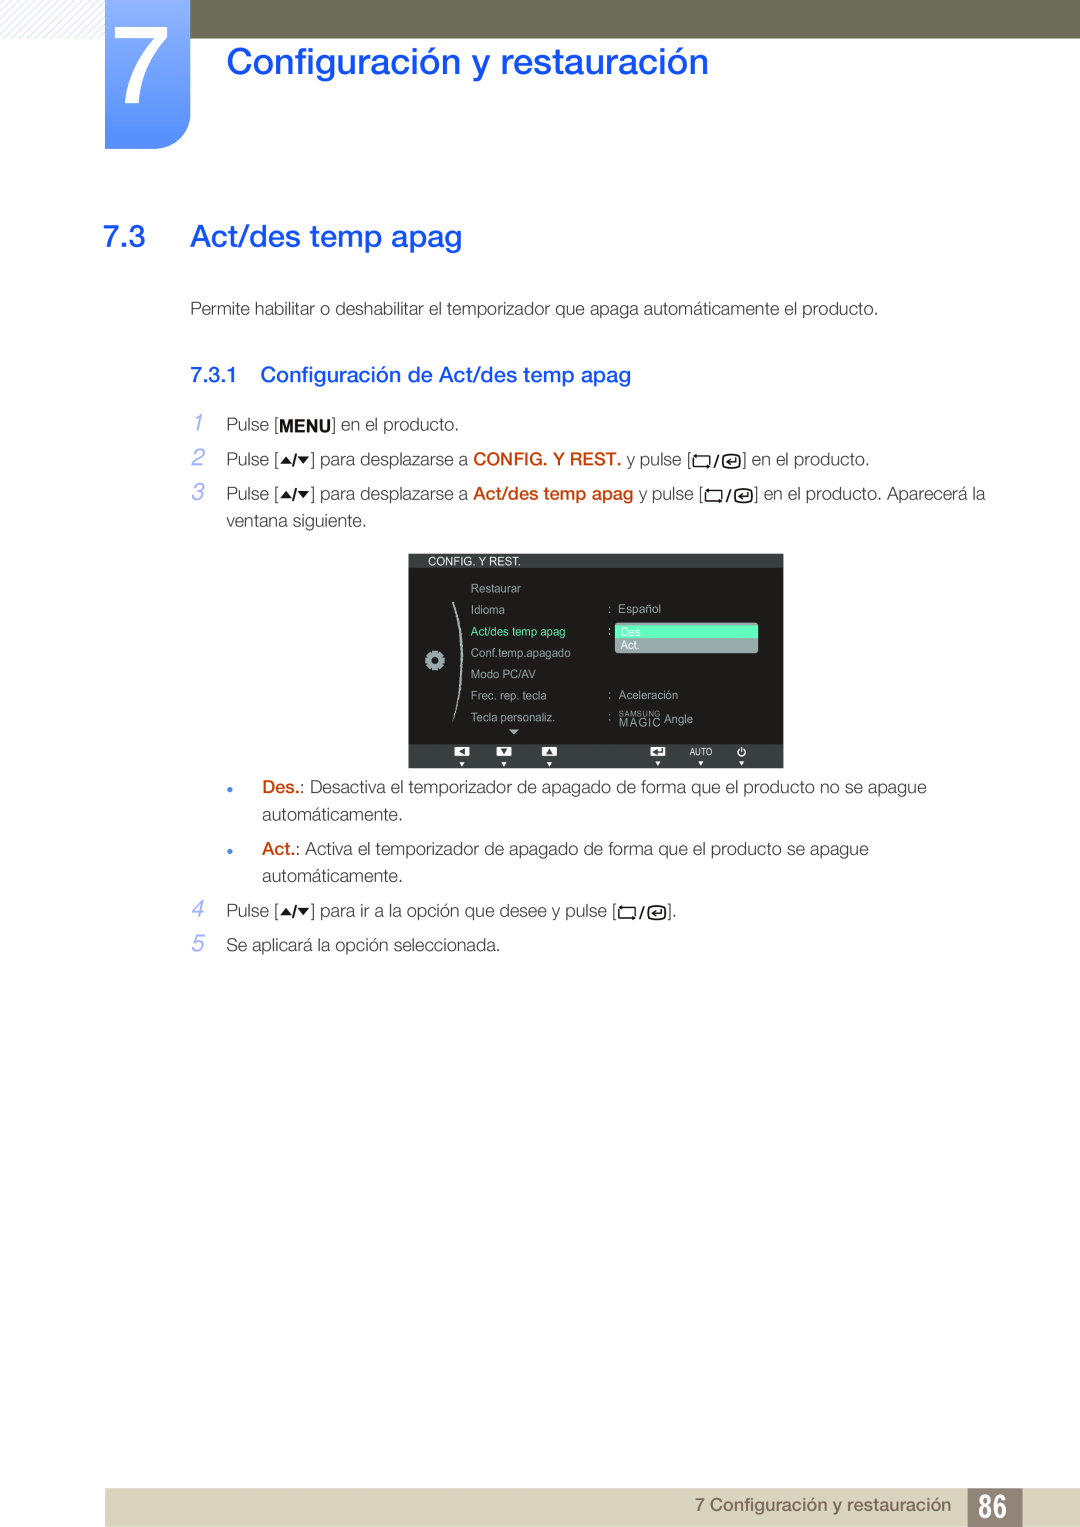 Samsung LF22TSCTBAN/EN manual 7.3 Act/des temp apag, Configuración de Act/des temp apag, Configuración y restauración 